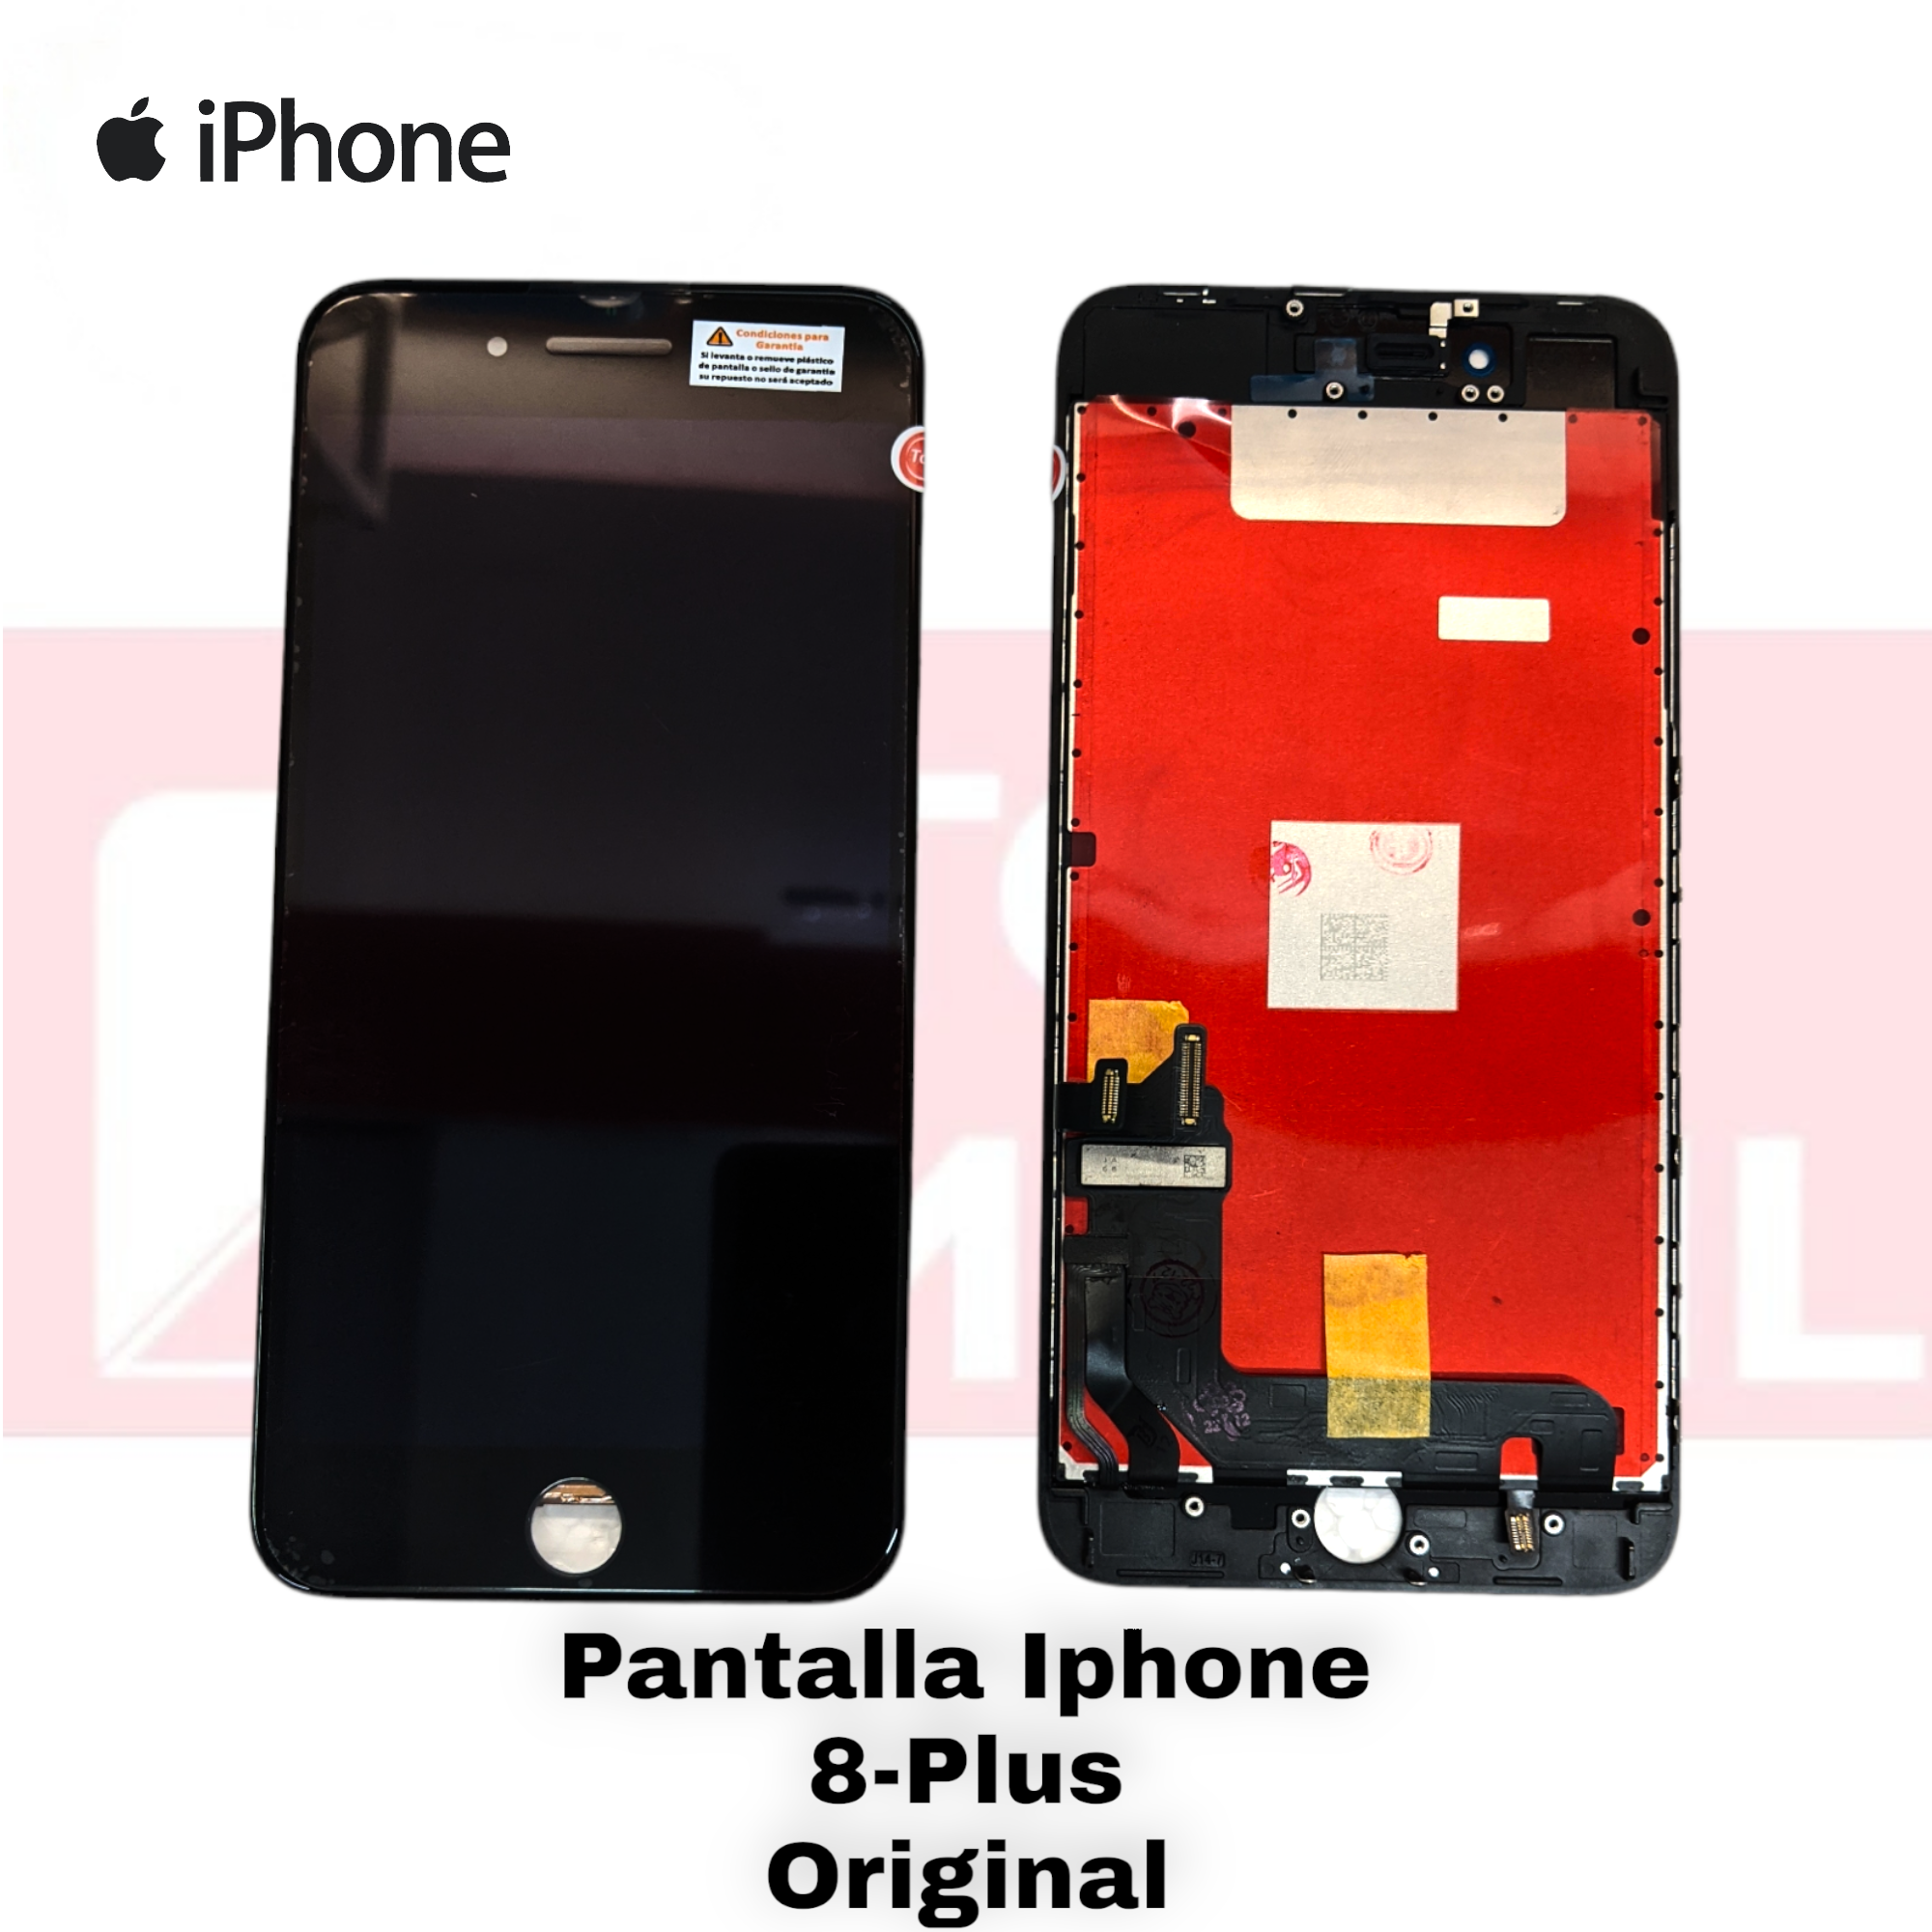 Pantalla iPhone 7 PLUS Original Instalado 